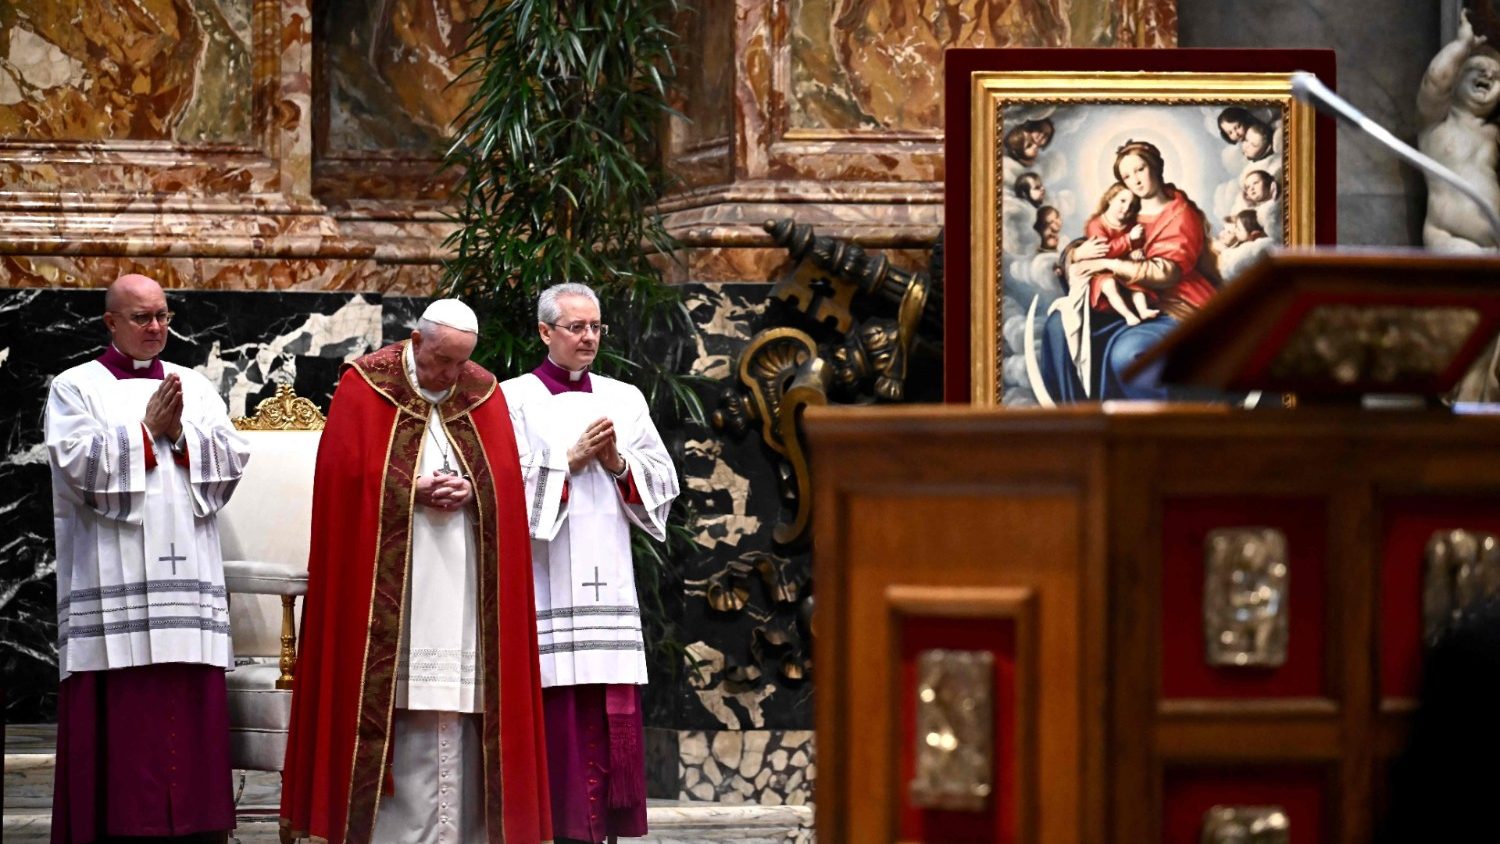 ĐTC cử hành Thánh lễ cầu nguyện cho các Hồng Y và Giám mục qua đời trong năm qua